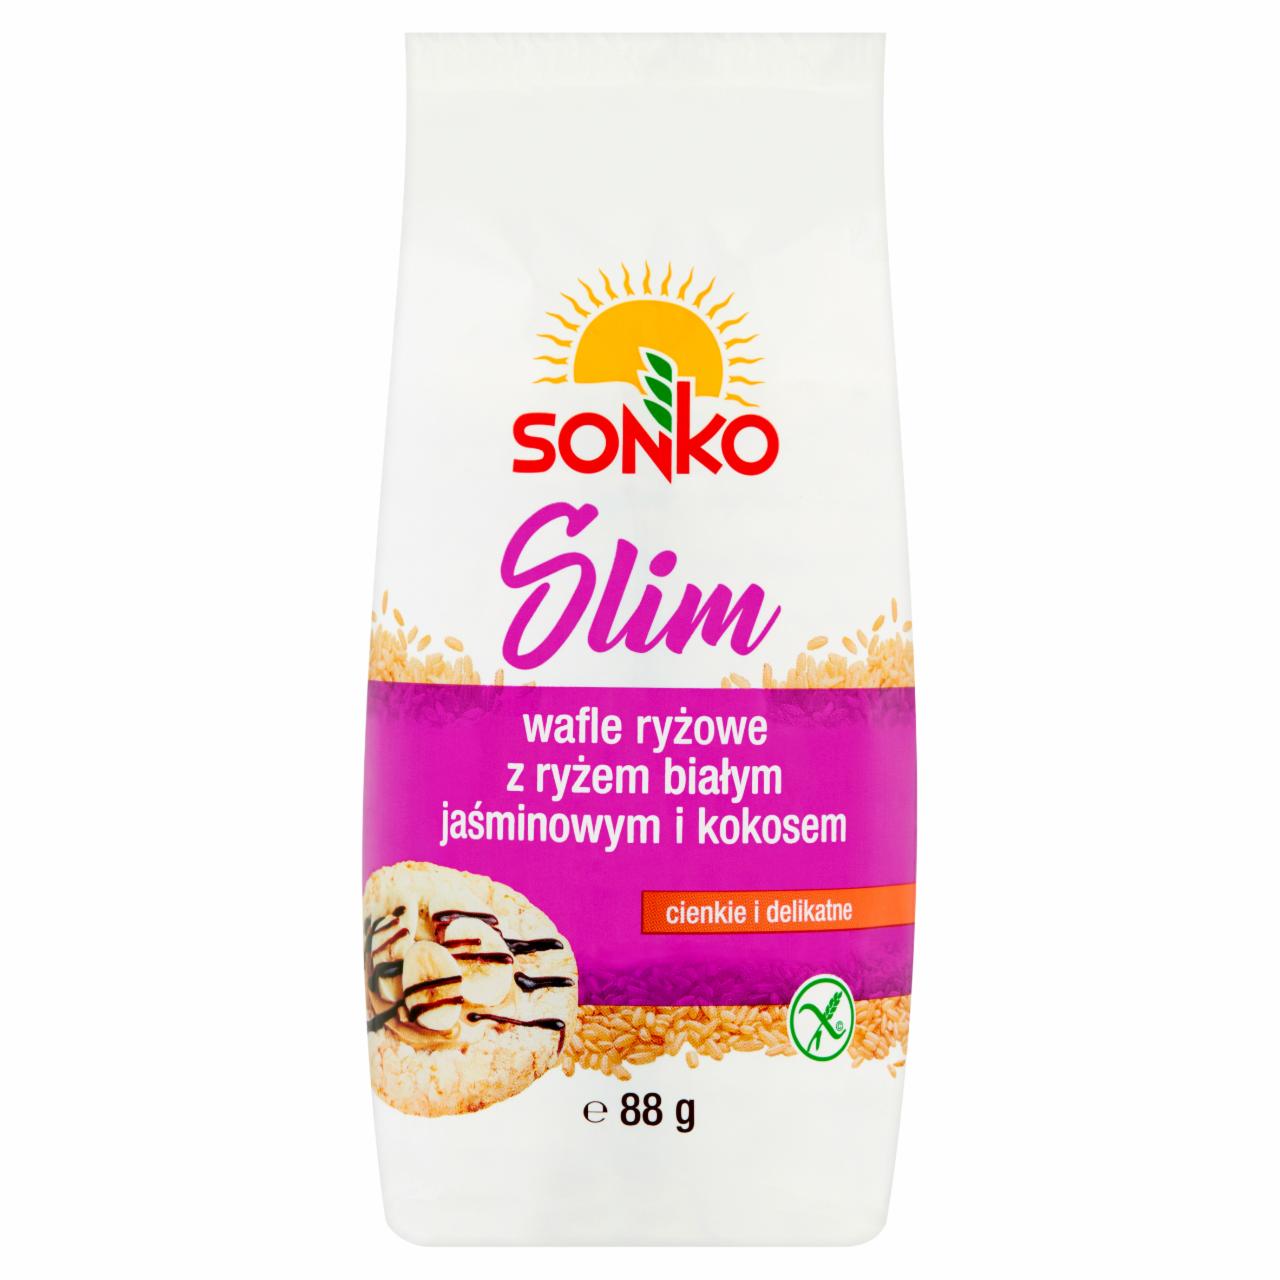 Zdjęcia - Sonko Slim Wafle ryżowe z ryżem białym jaśminowym i kokosem 88 g